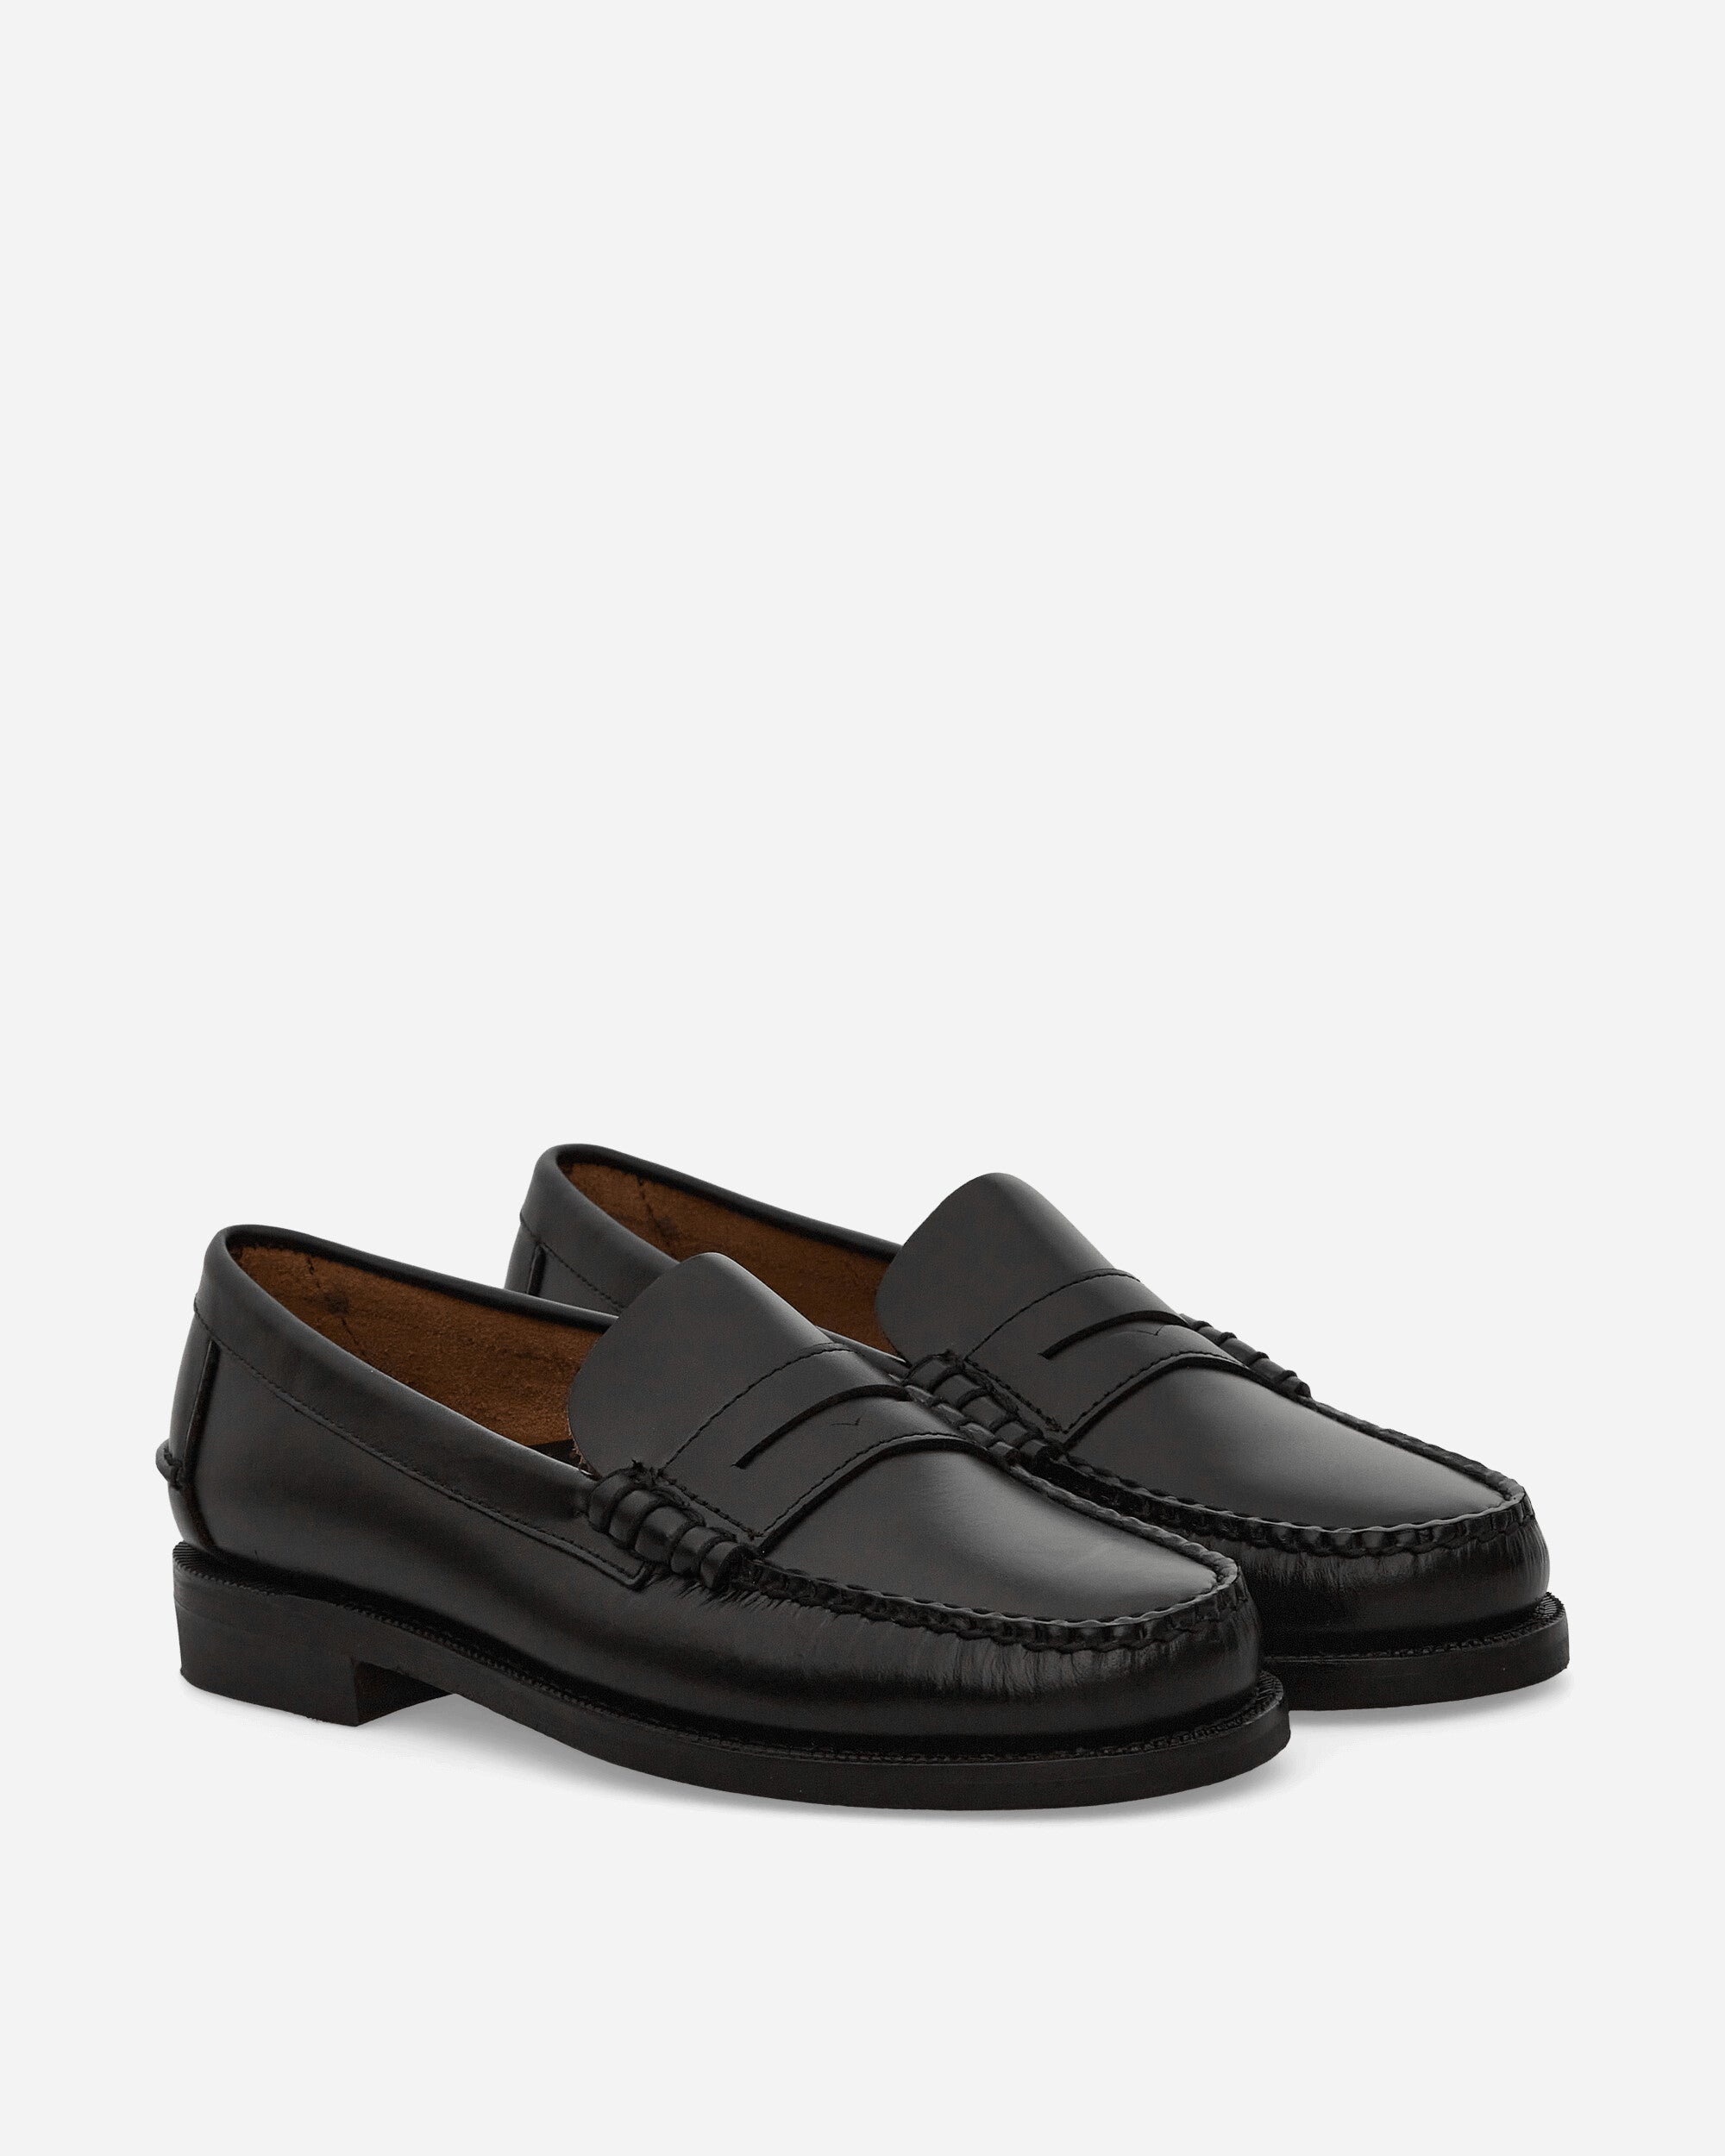 Sebago Classic Dan Mocassin Black Classic Shoes Loafers 7000300 902